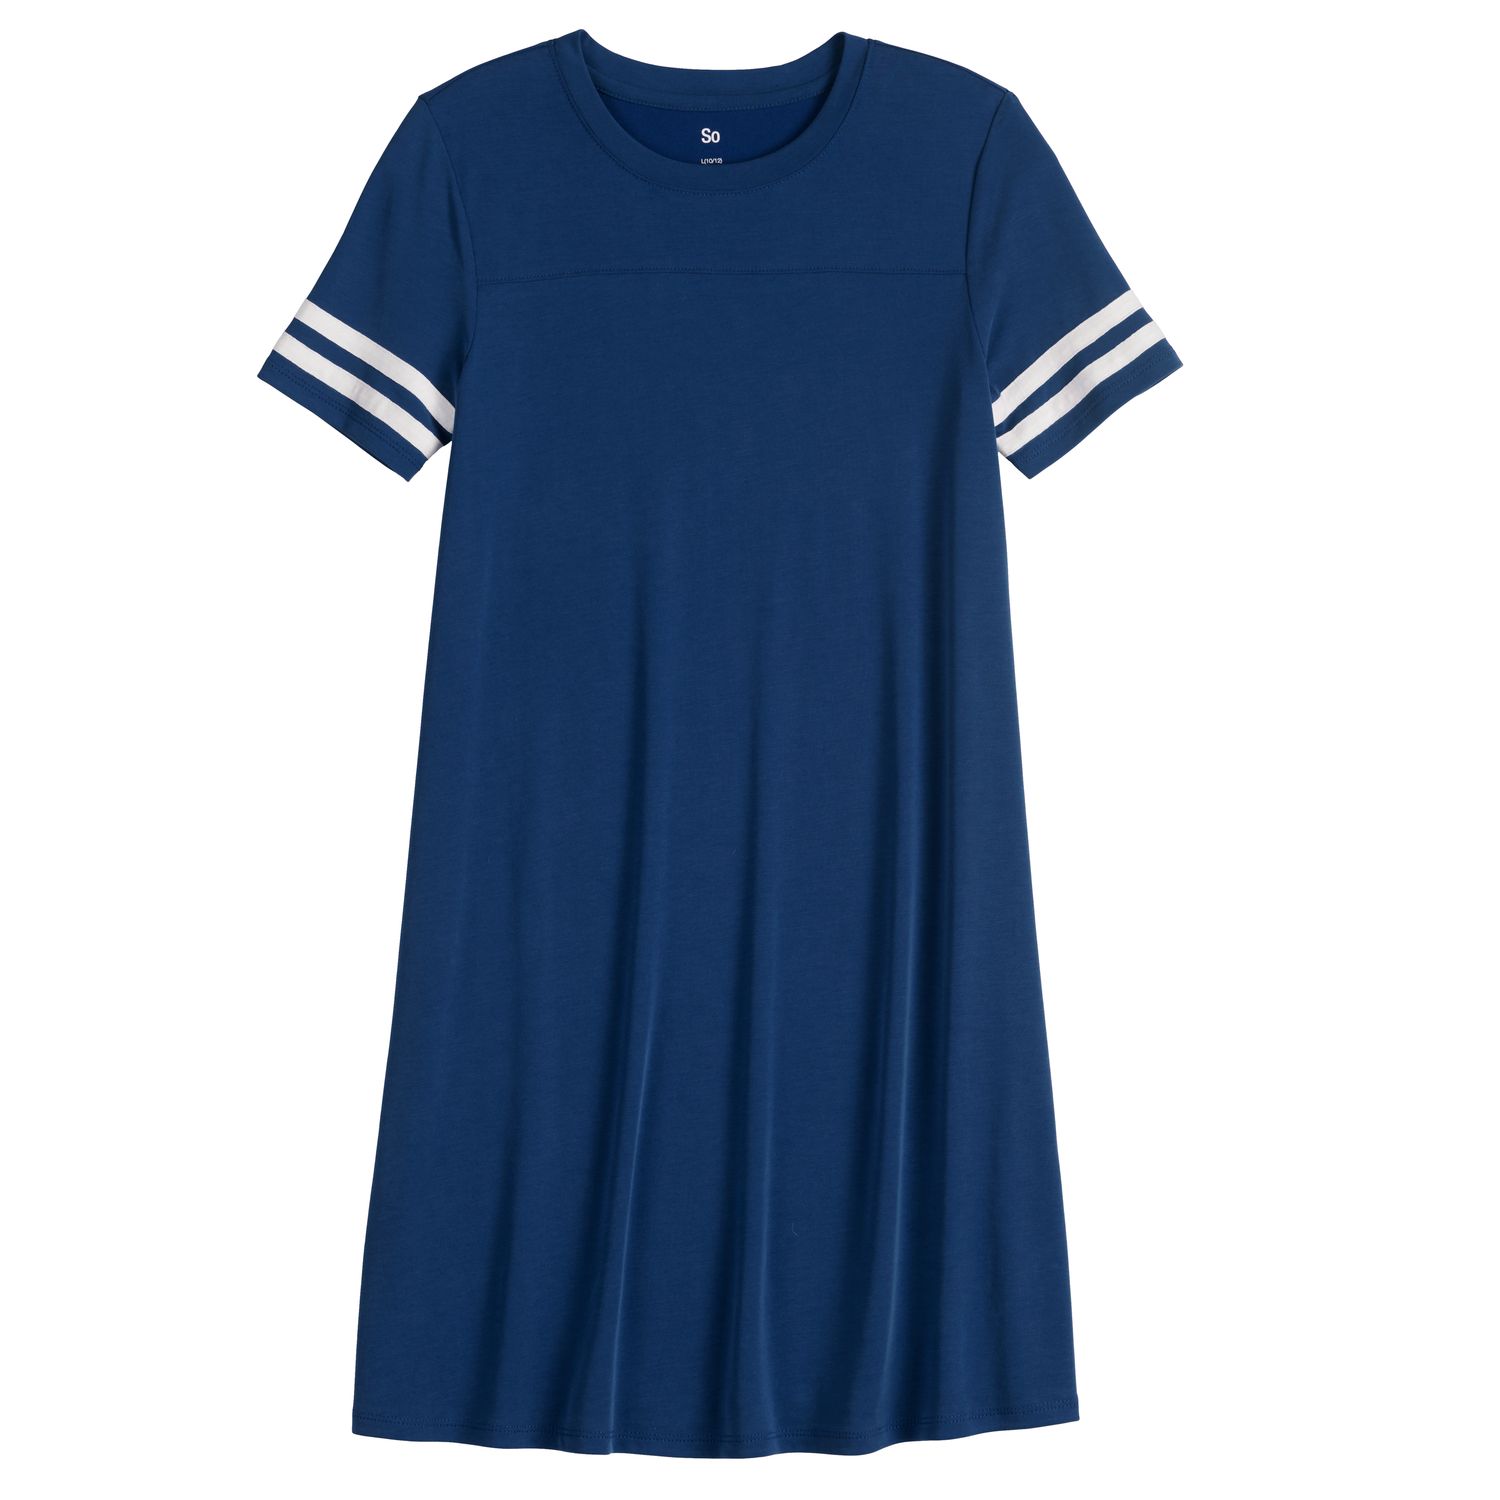 navy blue t shirt dress